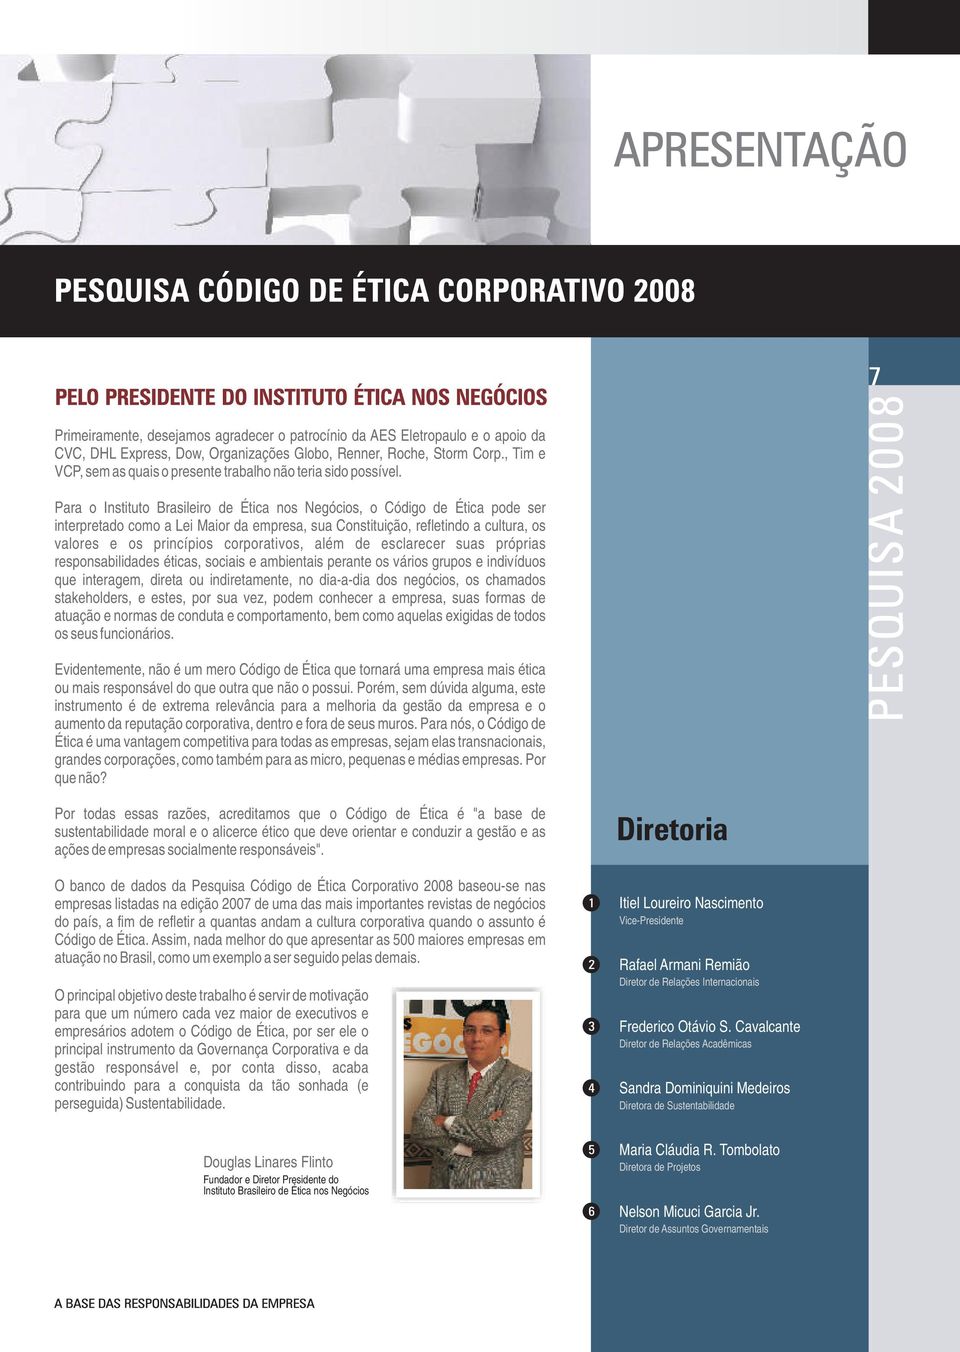 Para o Instituto Brasileiro de Ética nos Negócios, o Código de Ética pode ser interpretado como a Lei Maior da empresa, sua Constituição, refletindo a cultura, os valores e os princípios